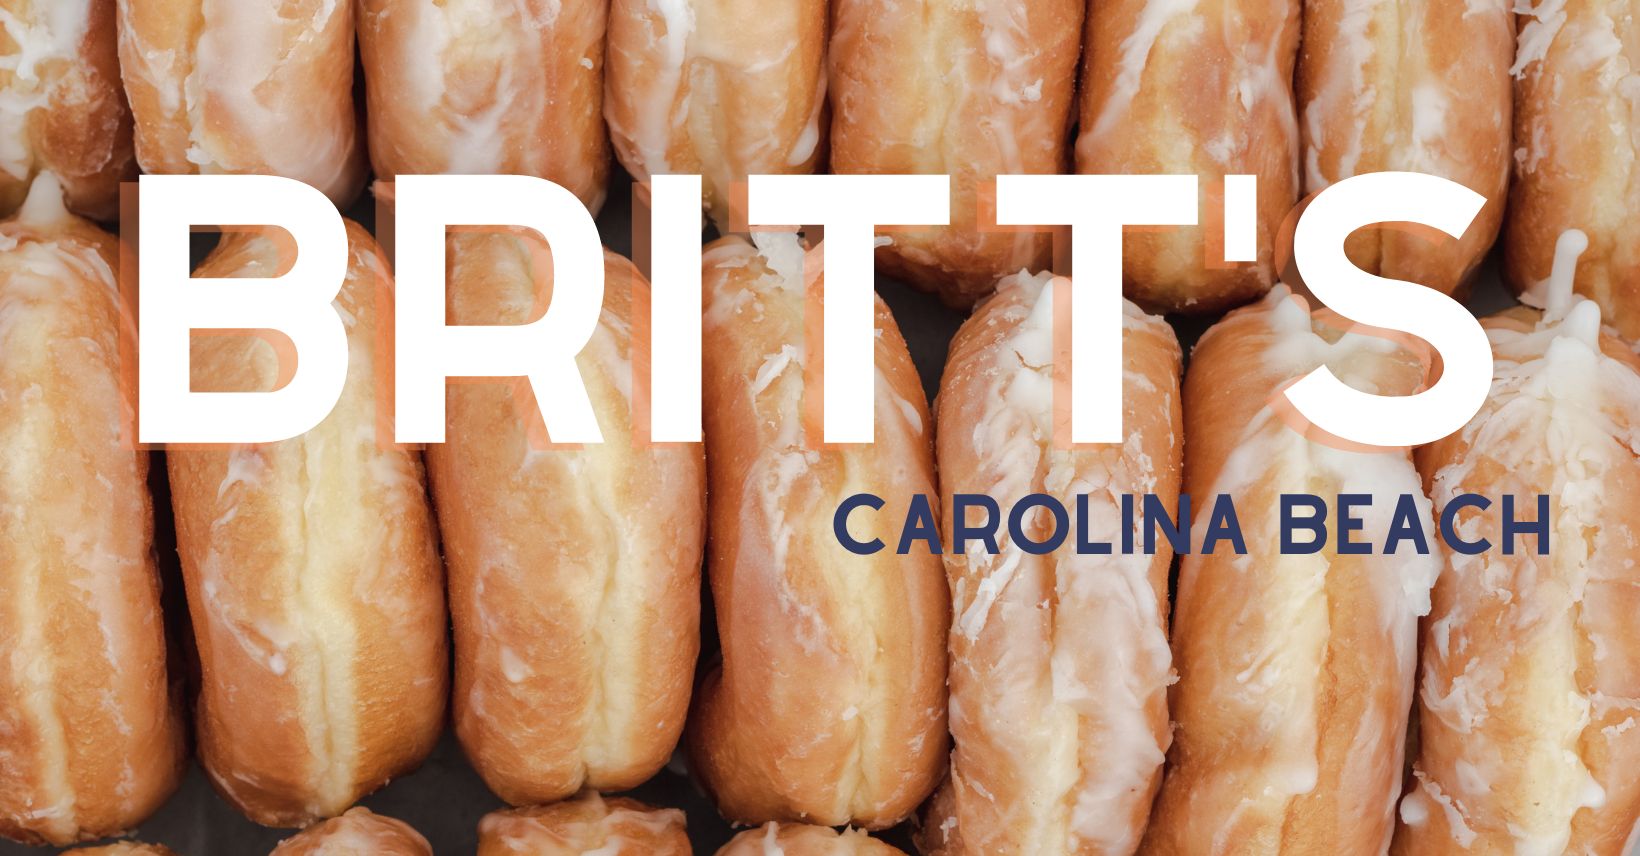 When can I visit Britt’s Donuts in Carolina Beach?